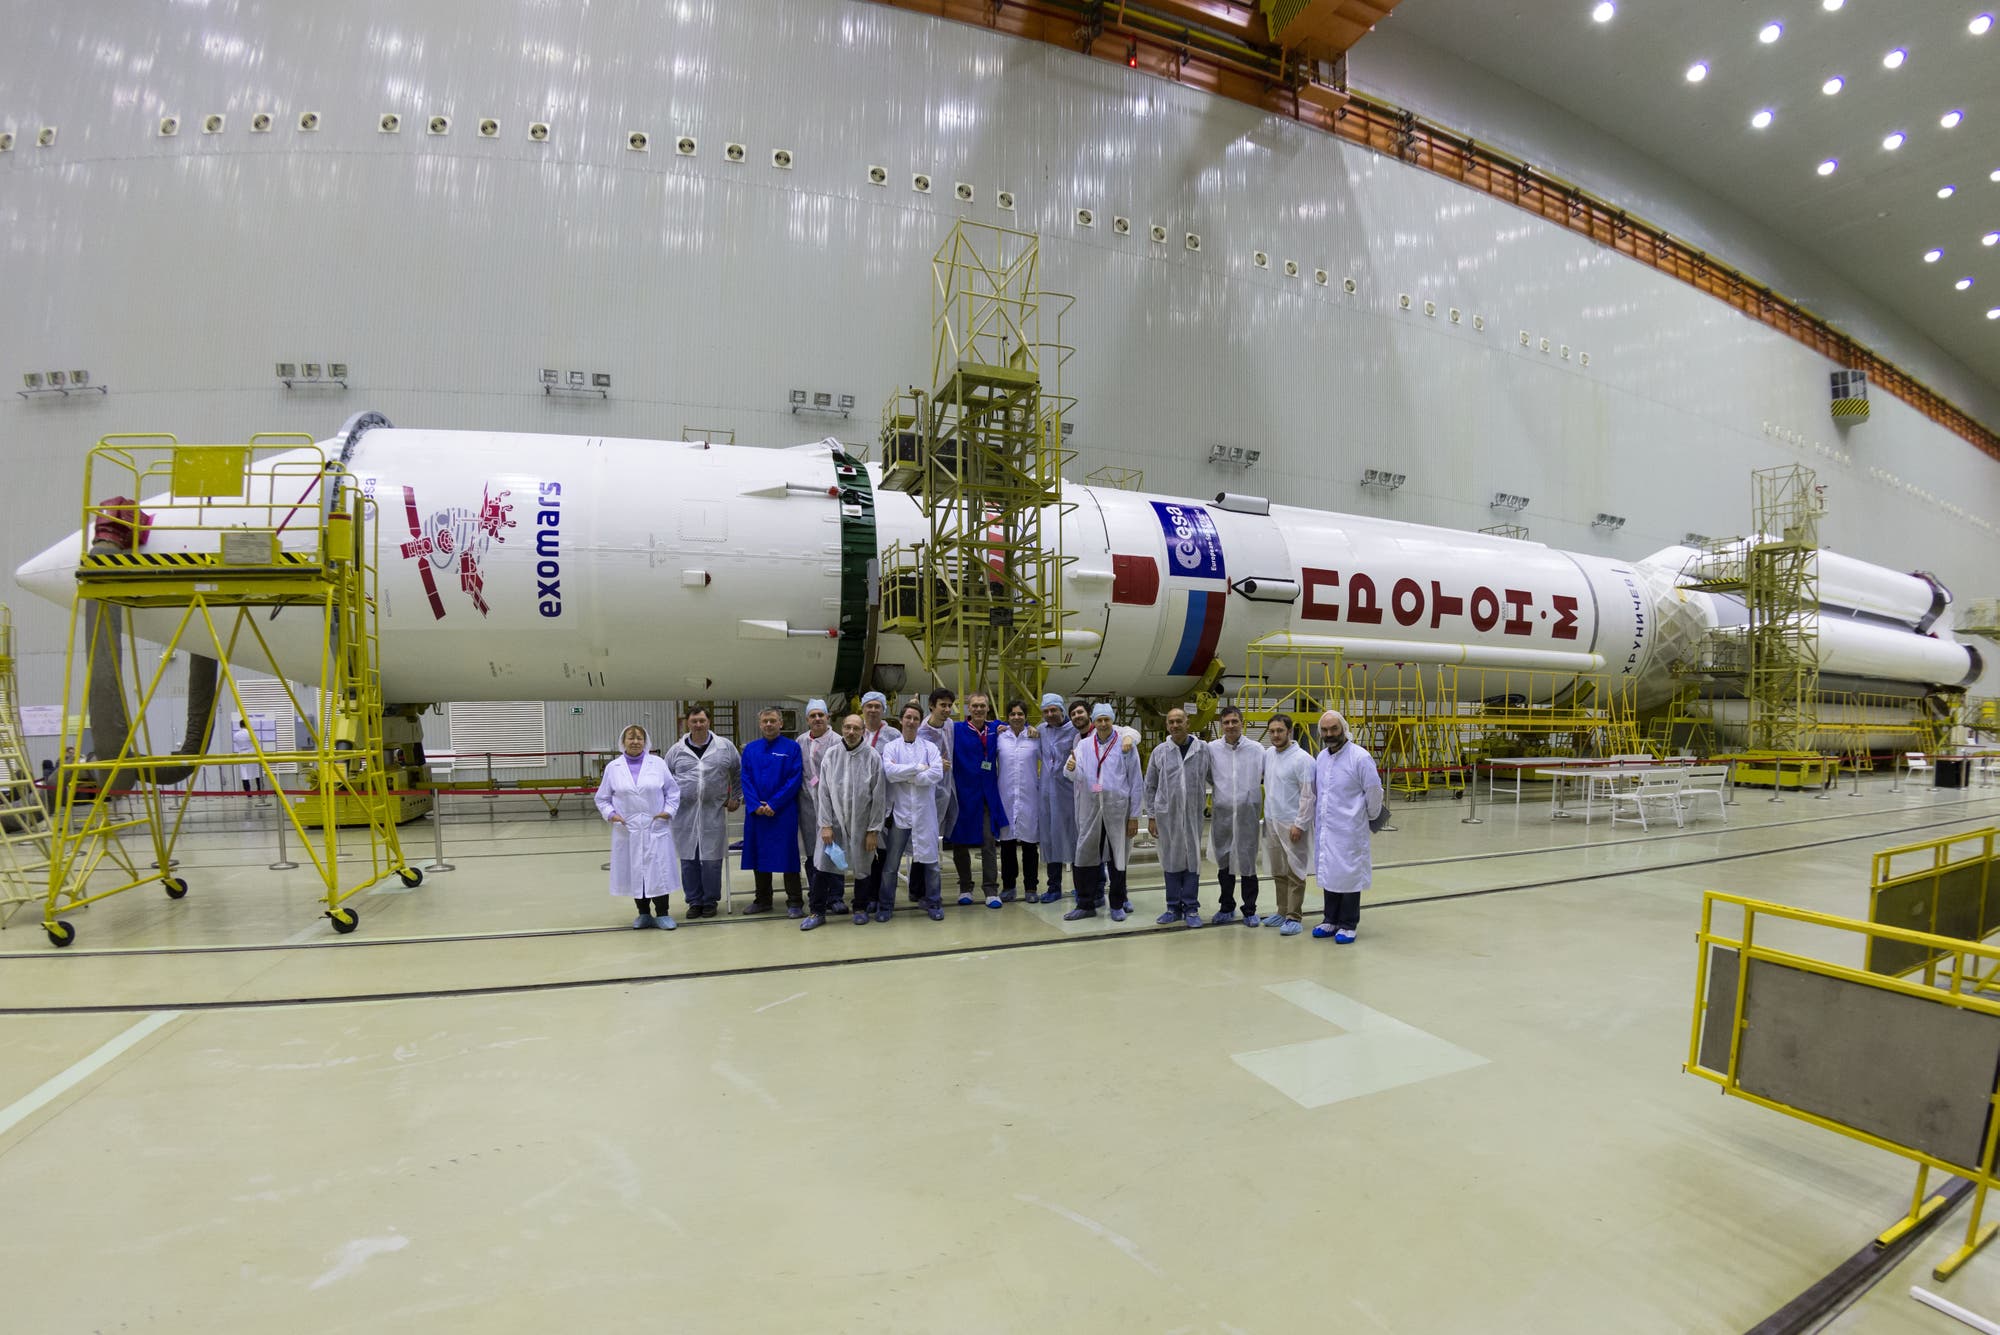 Die fertig montierte Proton-Rakete vor dem Transport zum Startplatz mit Startteam im Vordergrund